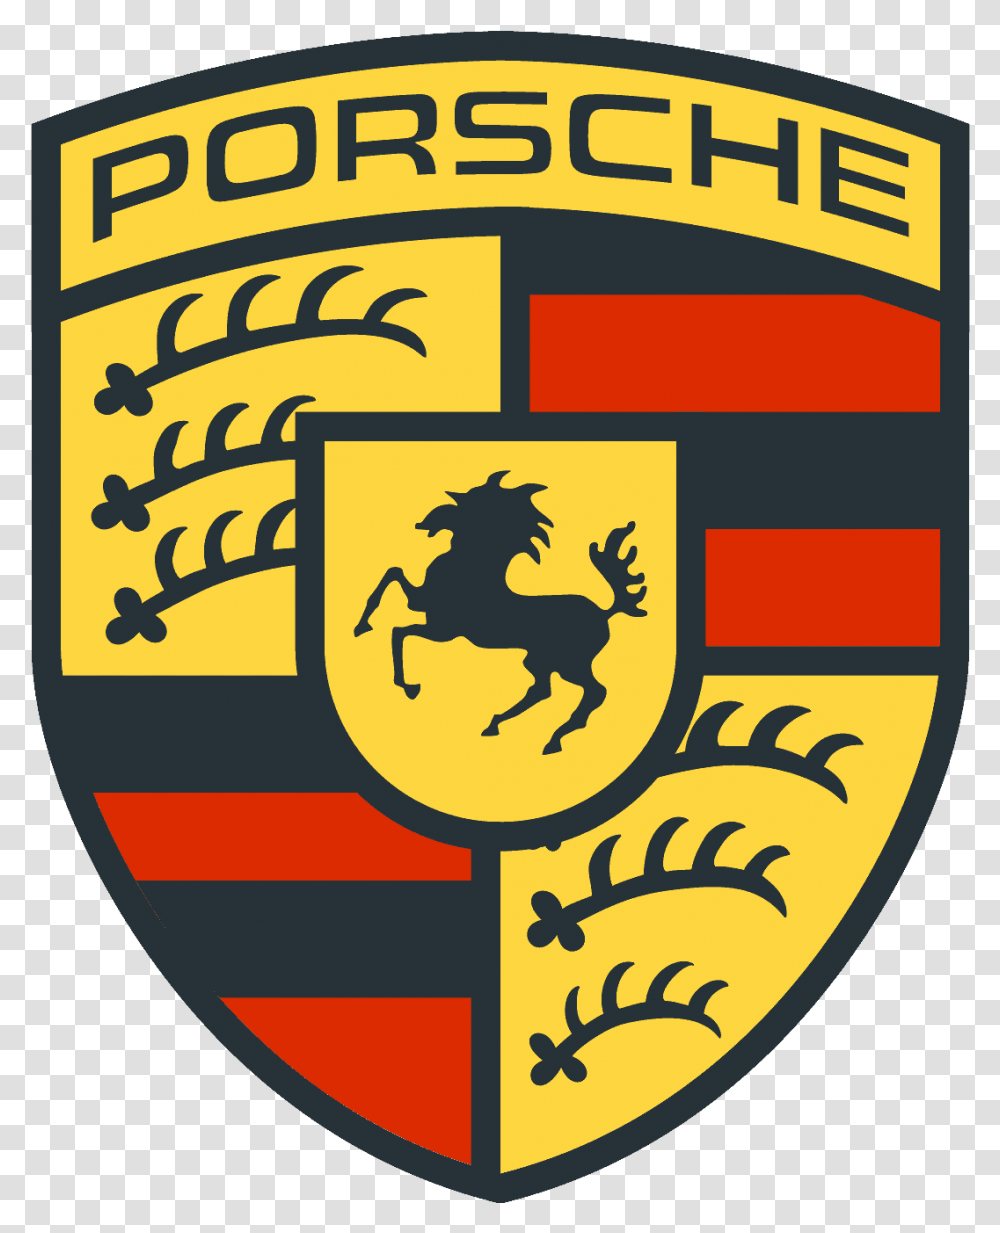 Porsche Clipart High Resolution Porsche Logo, Trademark, Badge, Emblem Transparent Png